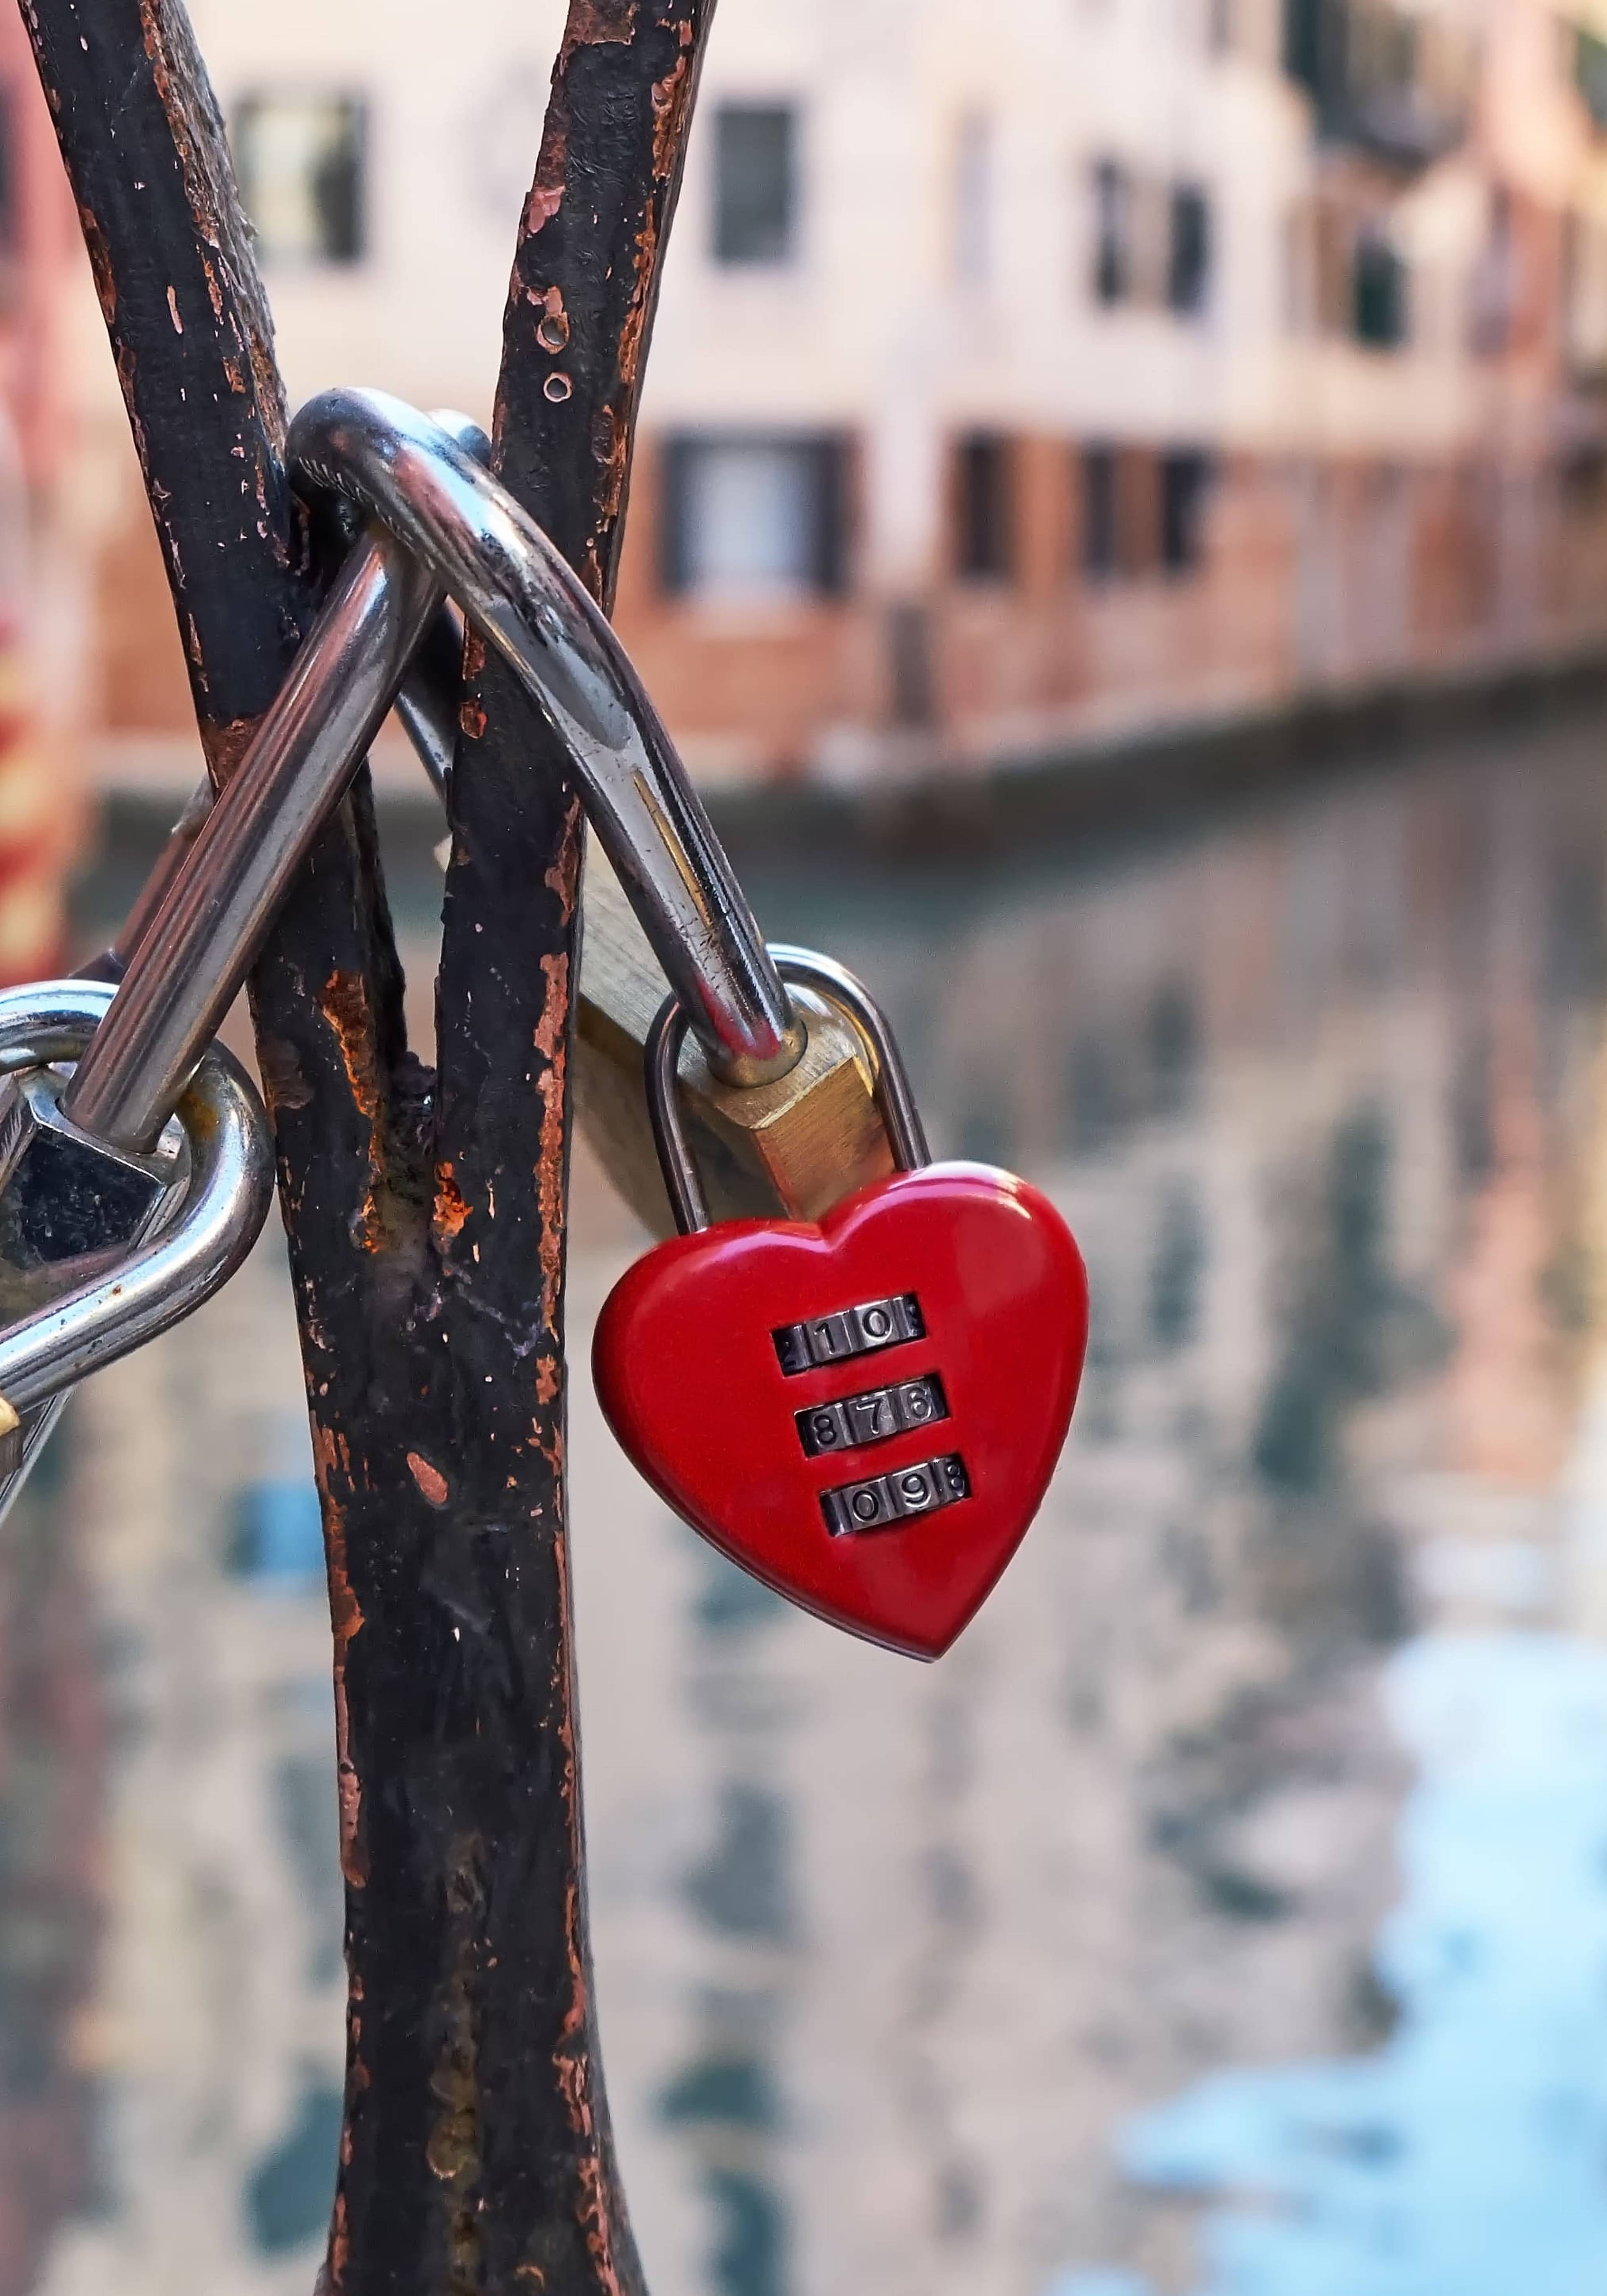 lucchetto a forma di cuore su un ponte a venezia